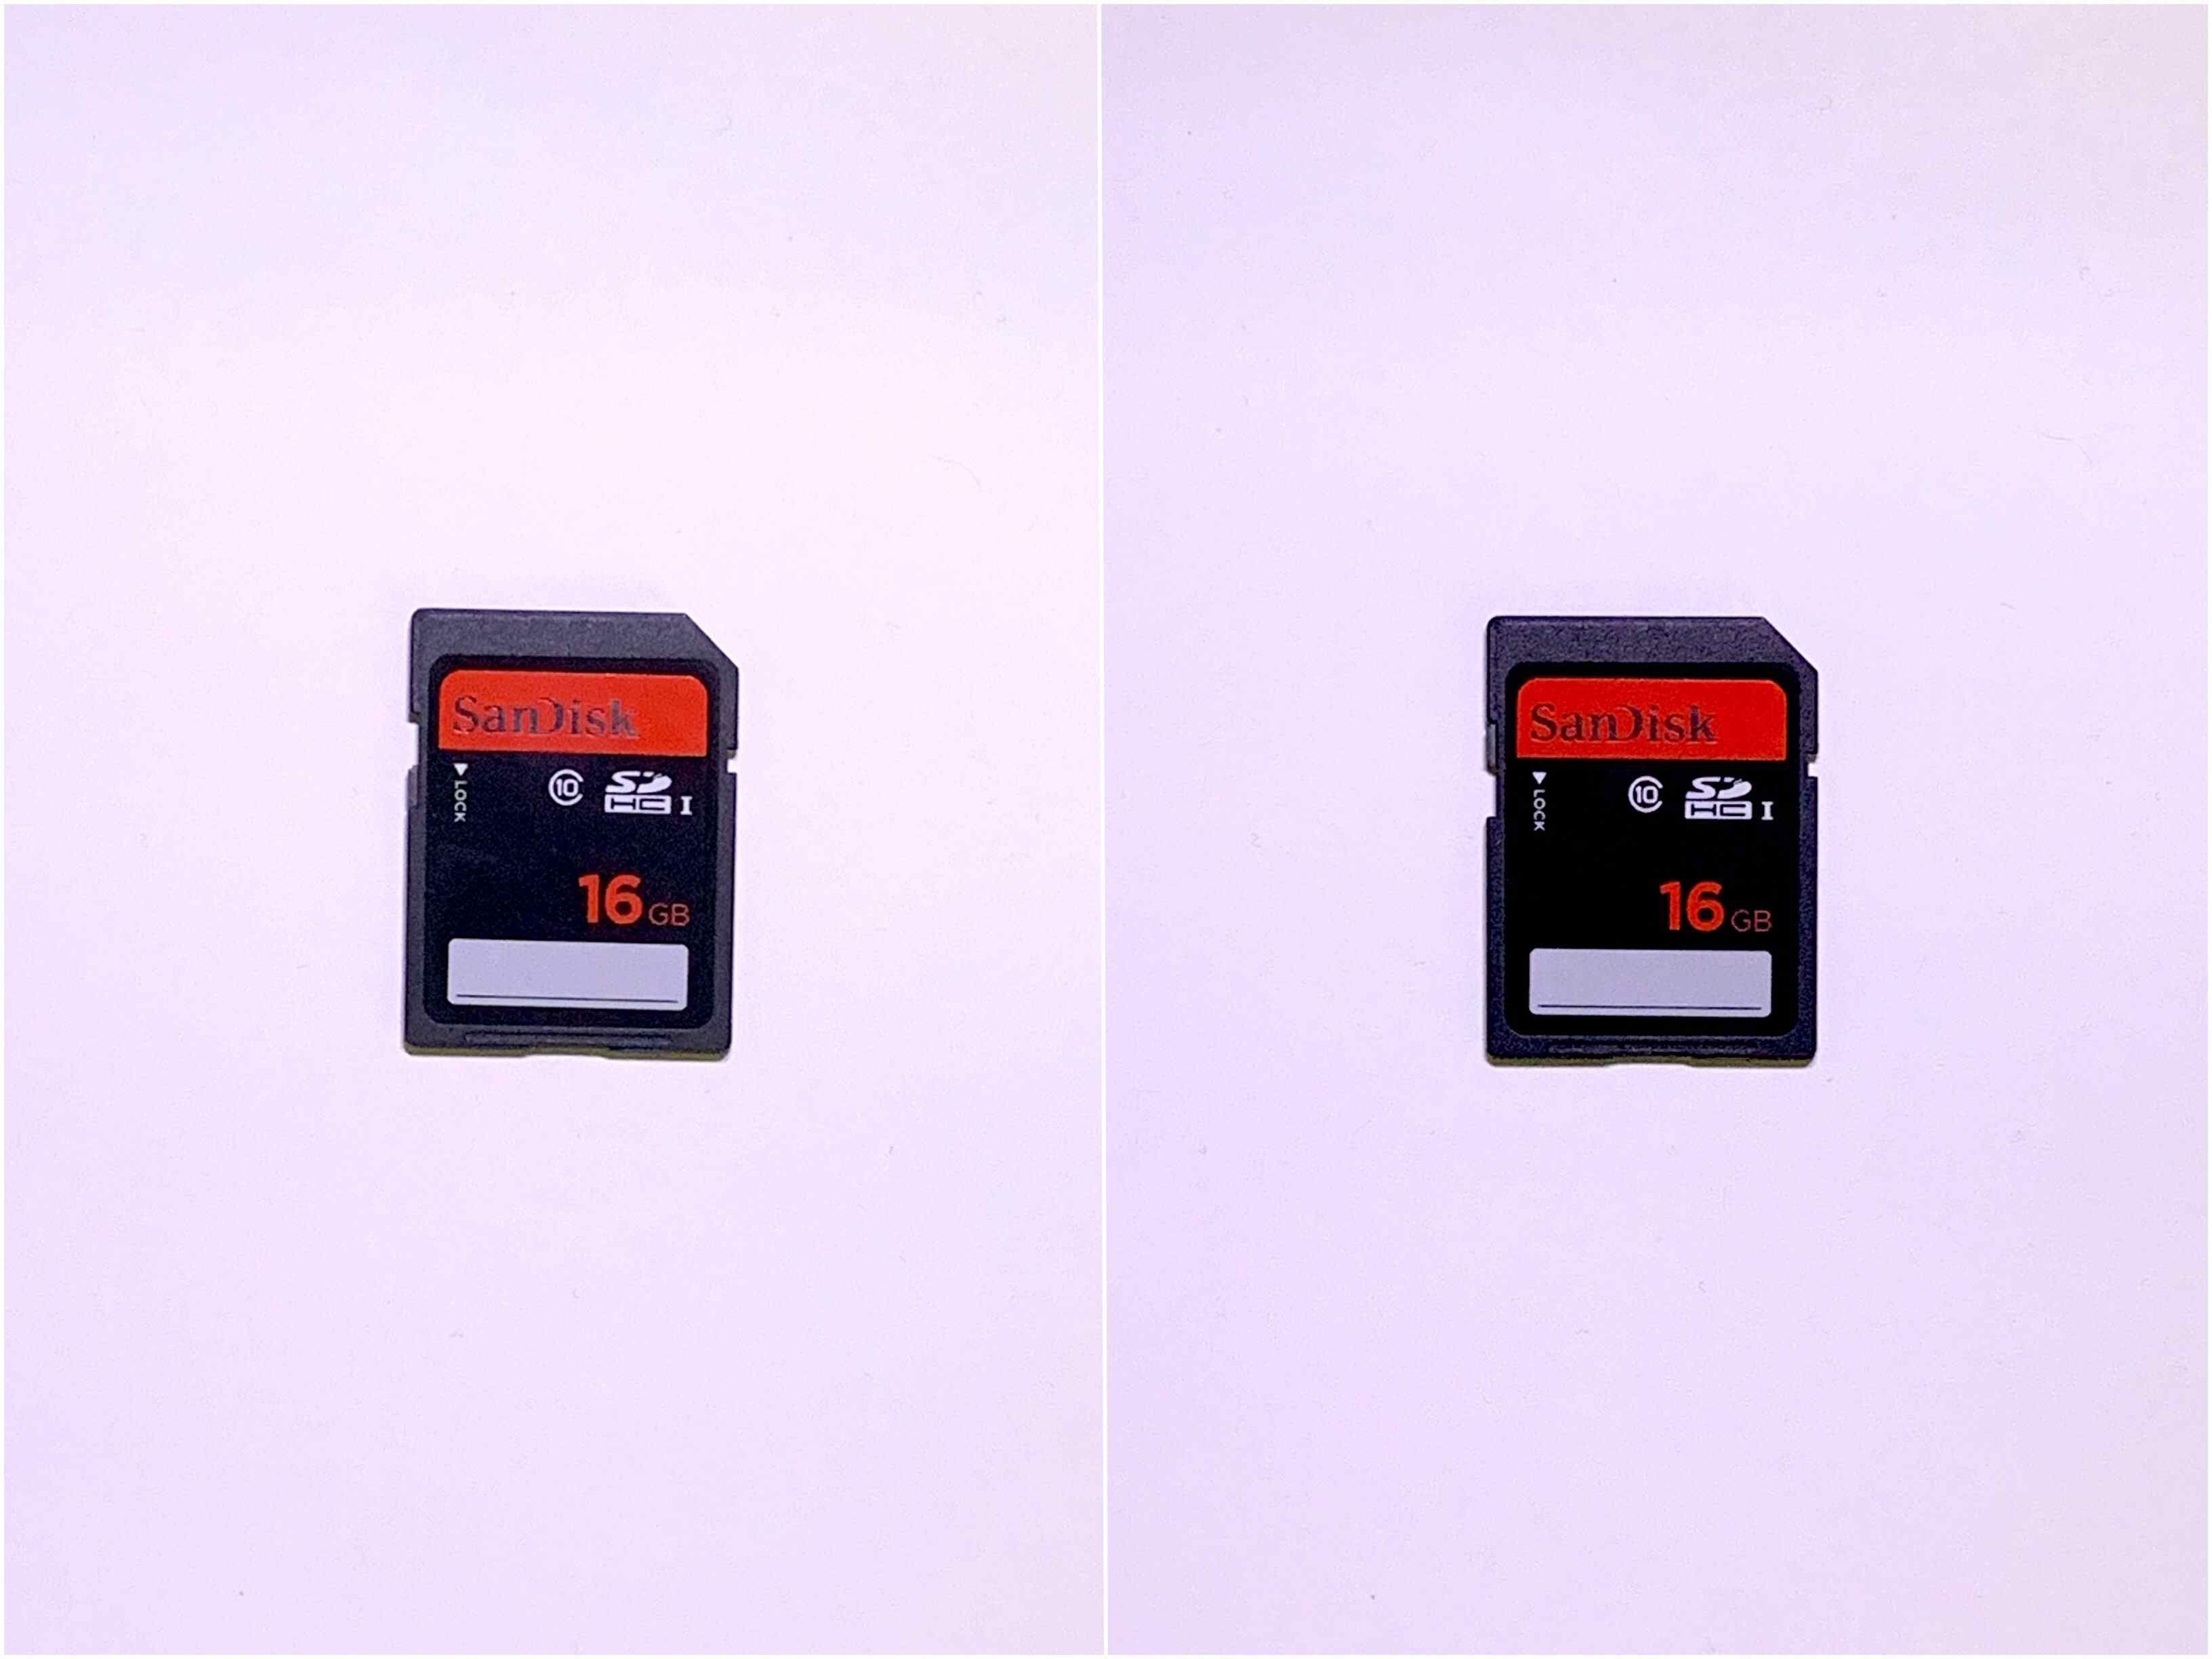 Фотография заблокированной SD-карты (слева) и разблокированной SD-карты (справа)